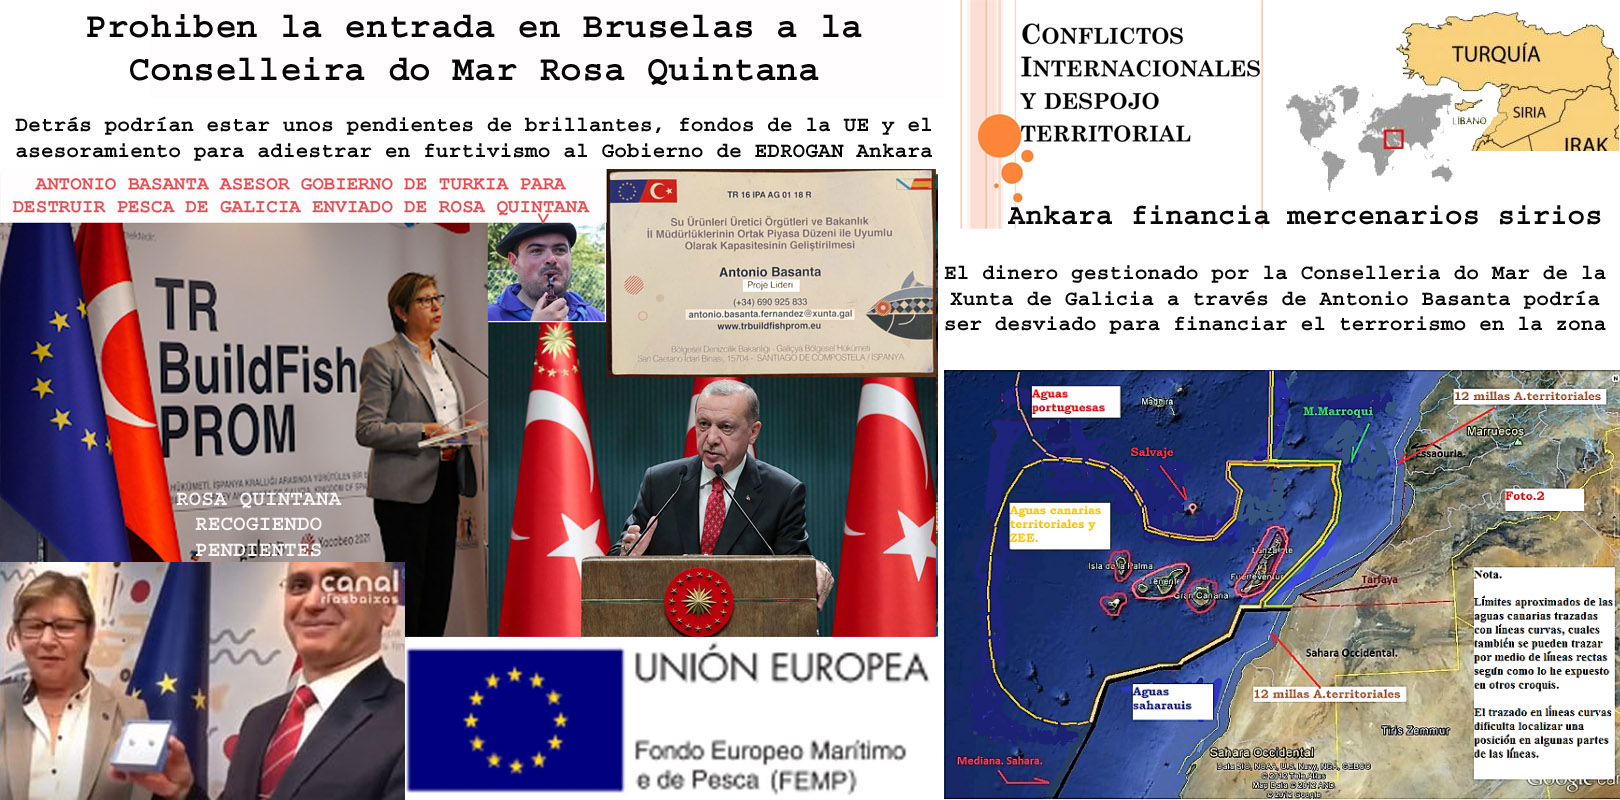 El hermanamiento de pesca gestionado por Rosa Quintana y Antonio Basanta  cargo político del PPdeG con Turquía destapa un grave conflicto  Internacional dentro de la Unión Europea. | Xornal Galicia